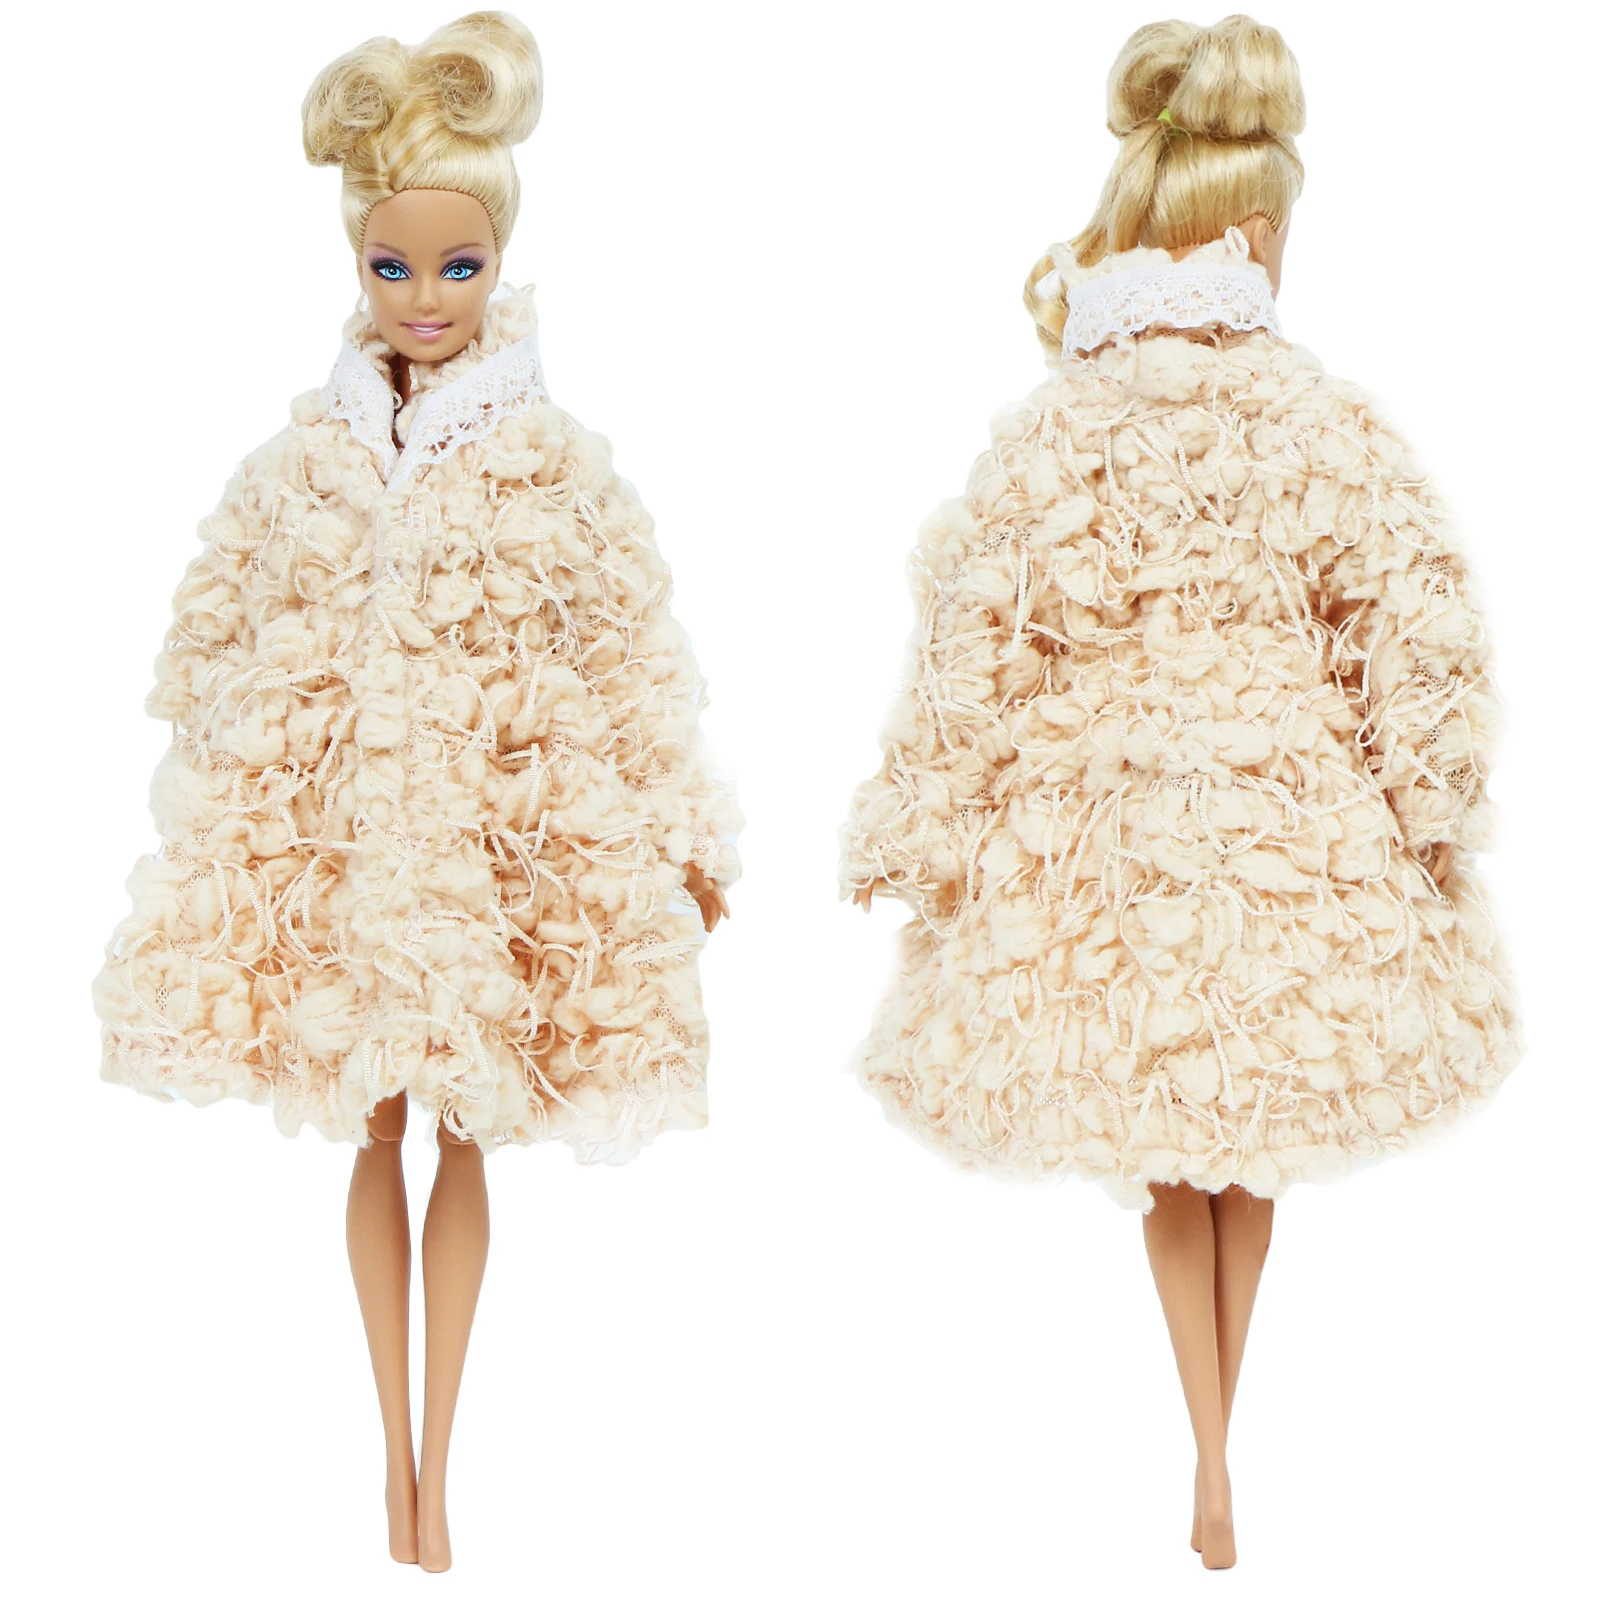 1 комплект, смешанный стиль, меховое пальто с длинными рукавами банный халат, аксессуары для кукольного домика, топы, платье повседневная одежда, Одежда для куклы Барби, детские игрушки